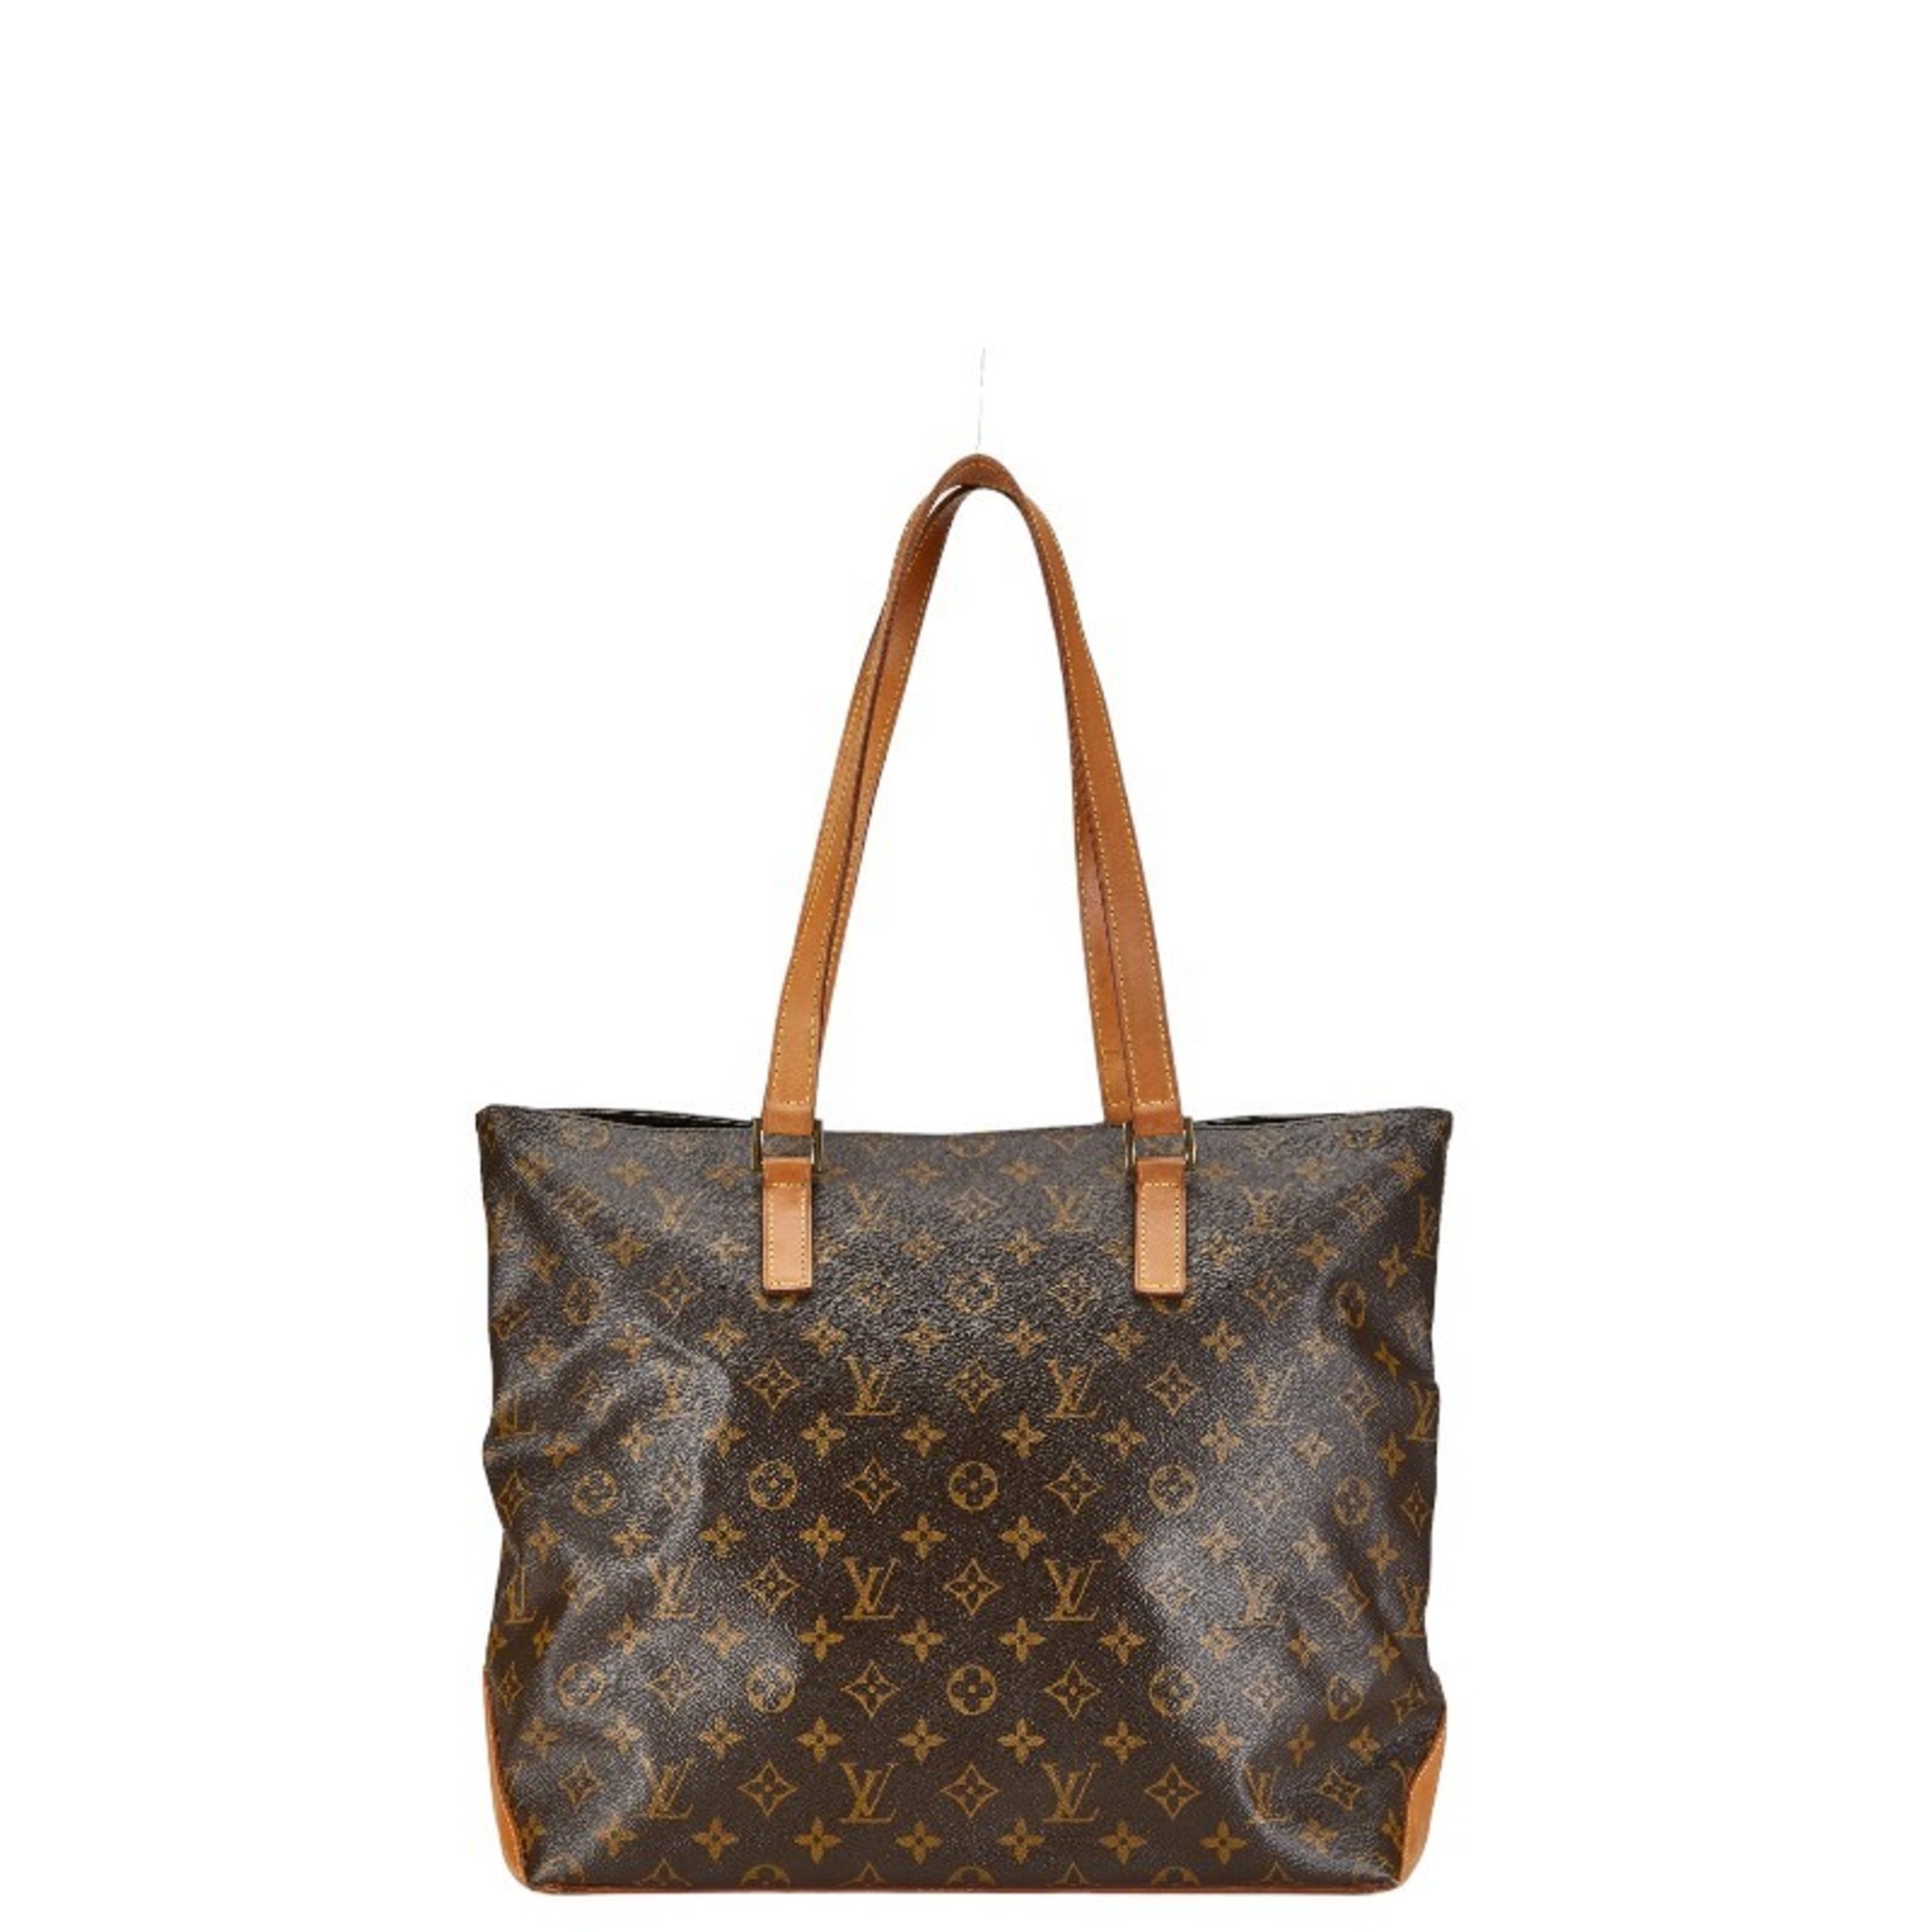 Louis Vuitton Monogram Caba Maison Tote Bag Shoulder M51151 Brown PVC Leather Women's LOUIS VUITTON